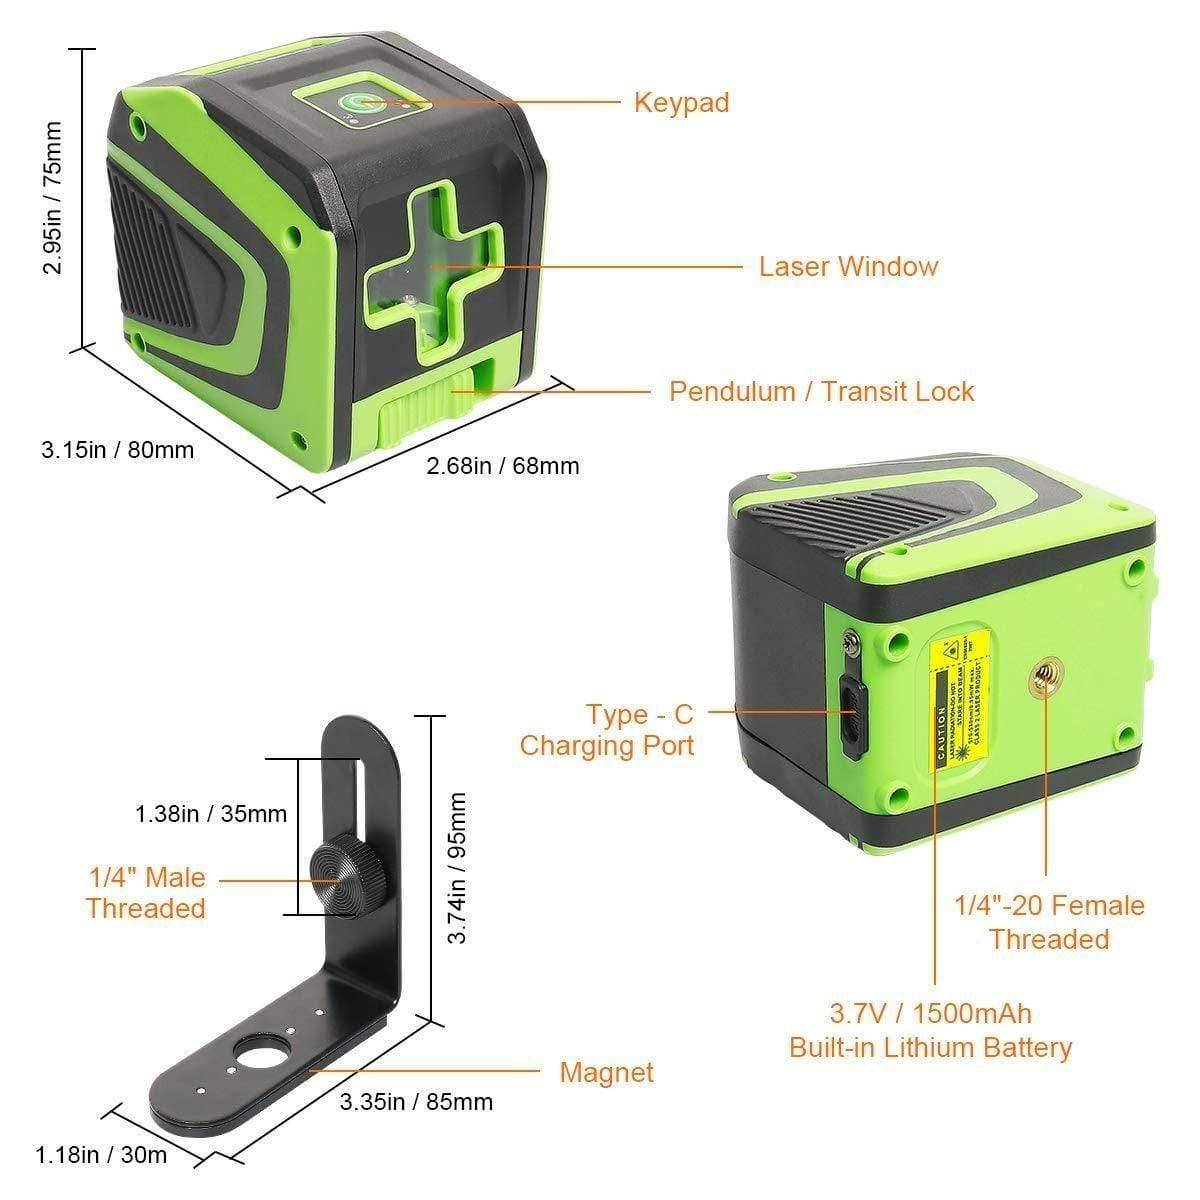 Huepar 5011G - Green Portable Line Laser with Pulse Mode & 360° Magnetic Rotating Base - HUEPAR UK